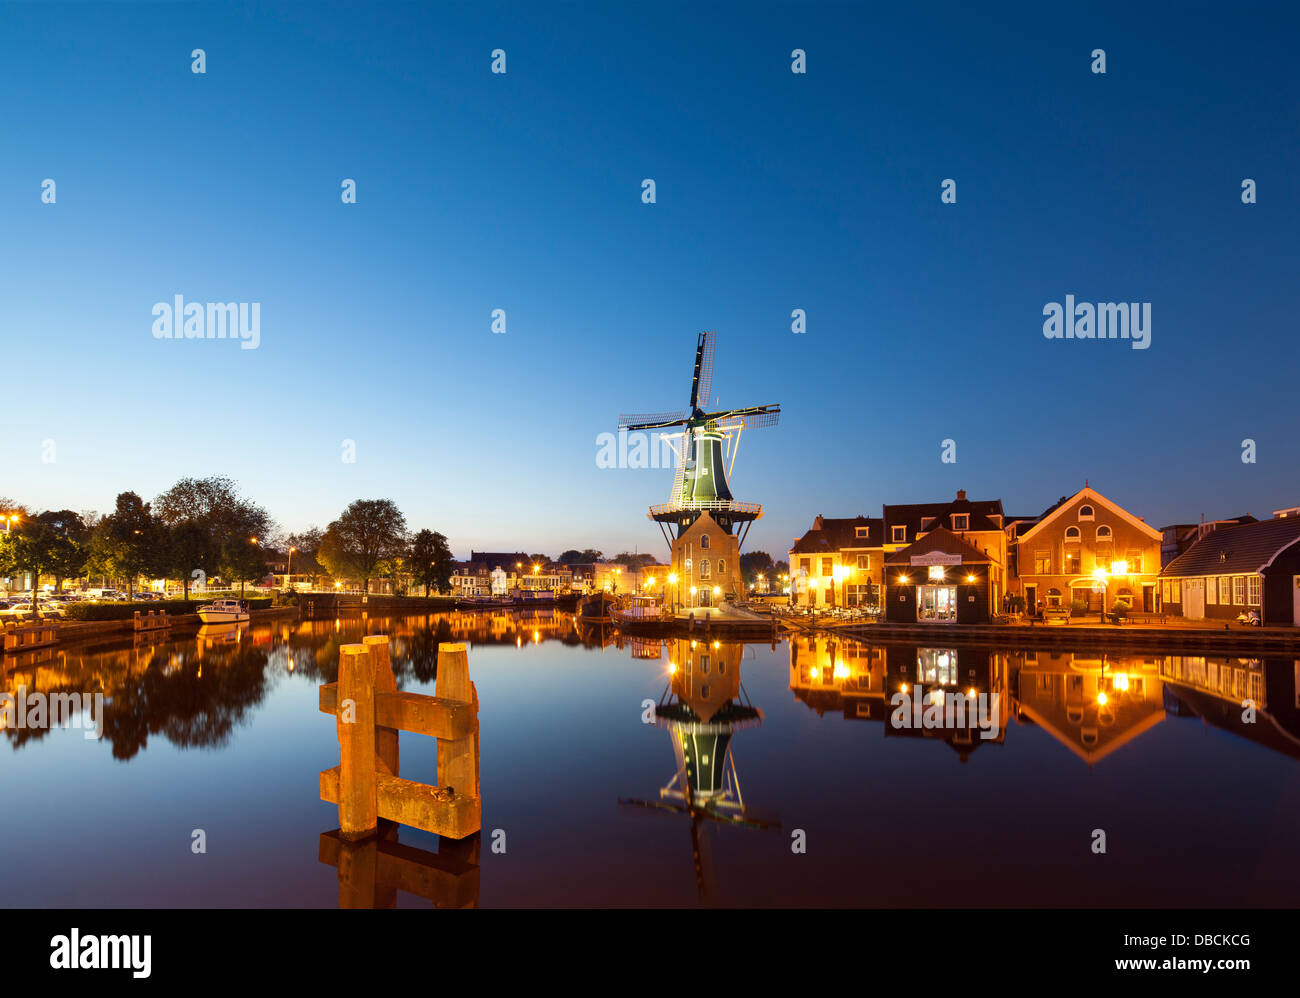 Il mulino a vento di Landmark De Adriaan in Haarlem Holland, Paesi Bassi. Sul fiume Spaarne, canal con ristorante Zuidam al crepuscolo Foto Stock